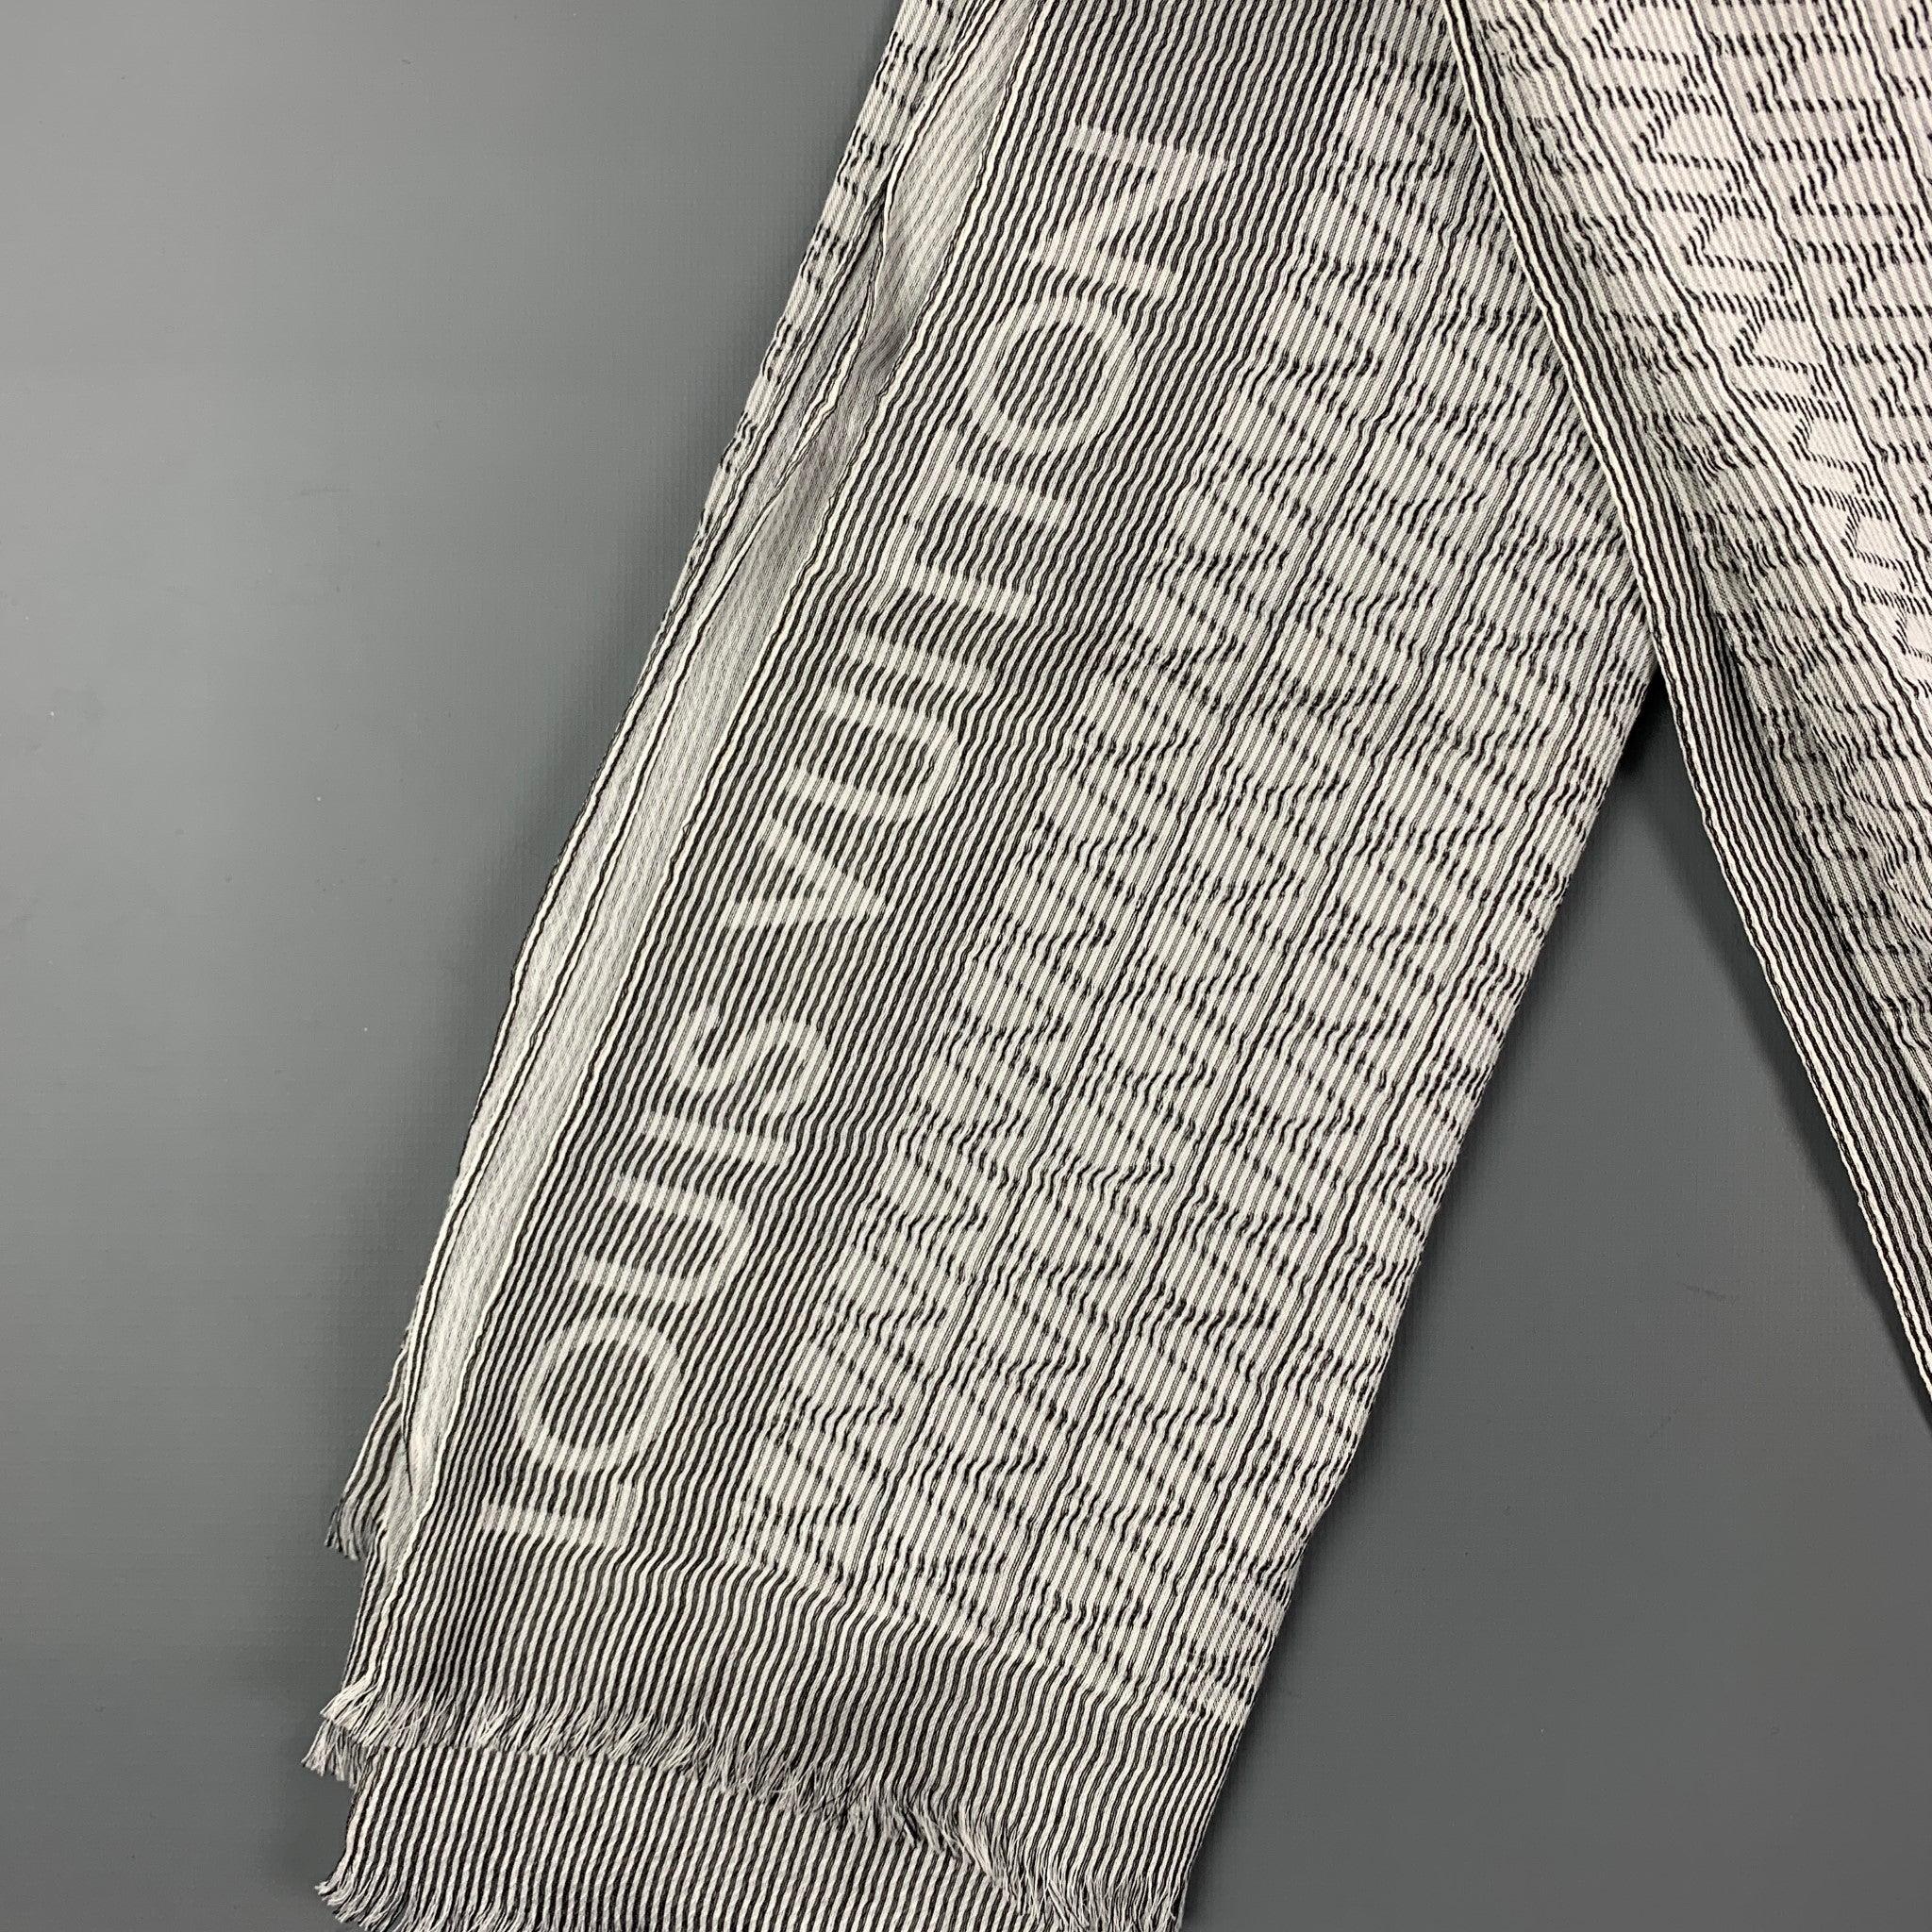 LOUIS VUITTON Schal kommt in 
weiß-grau gestreifte Baumwolle/Seide mit Fransenbesatz. Hergestellt in Italien.
Sehr gut
Gebrauchtes Zustand. 

Abmessungen: 
  74 Zoll  x 27 Zoll 
  
  
 
Sui Generis-Referenz: 120137
Kategorie: Schals
Mehr Details
   